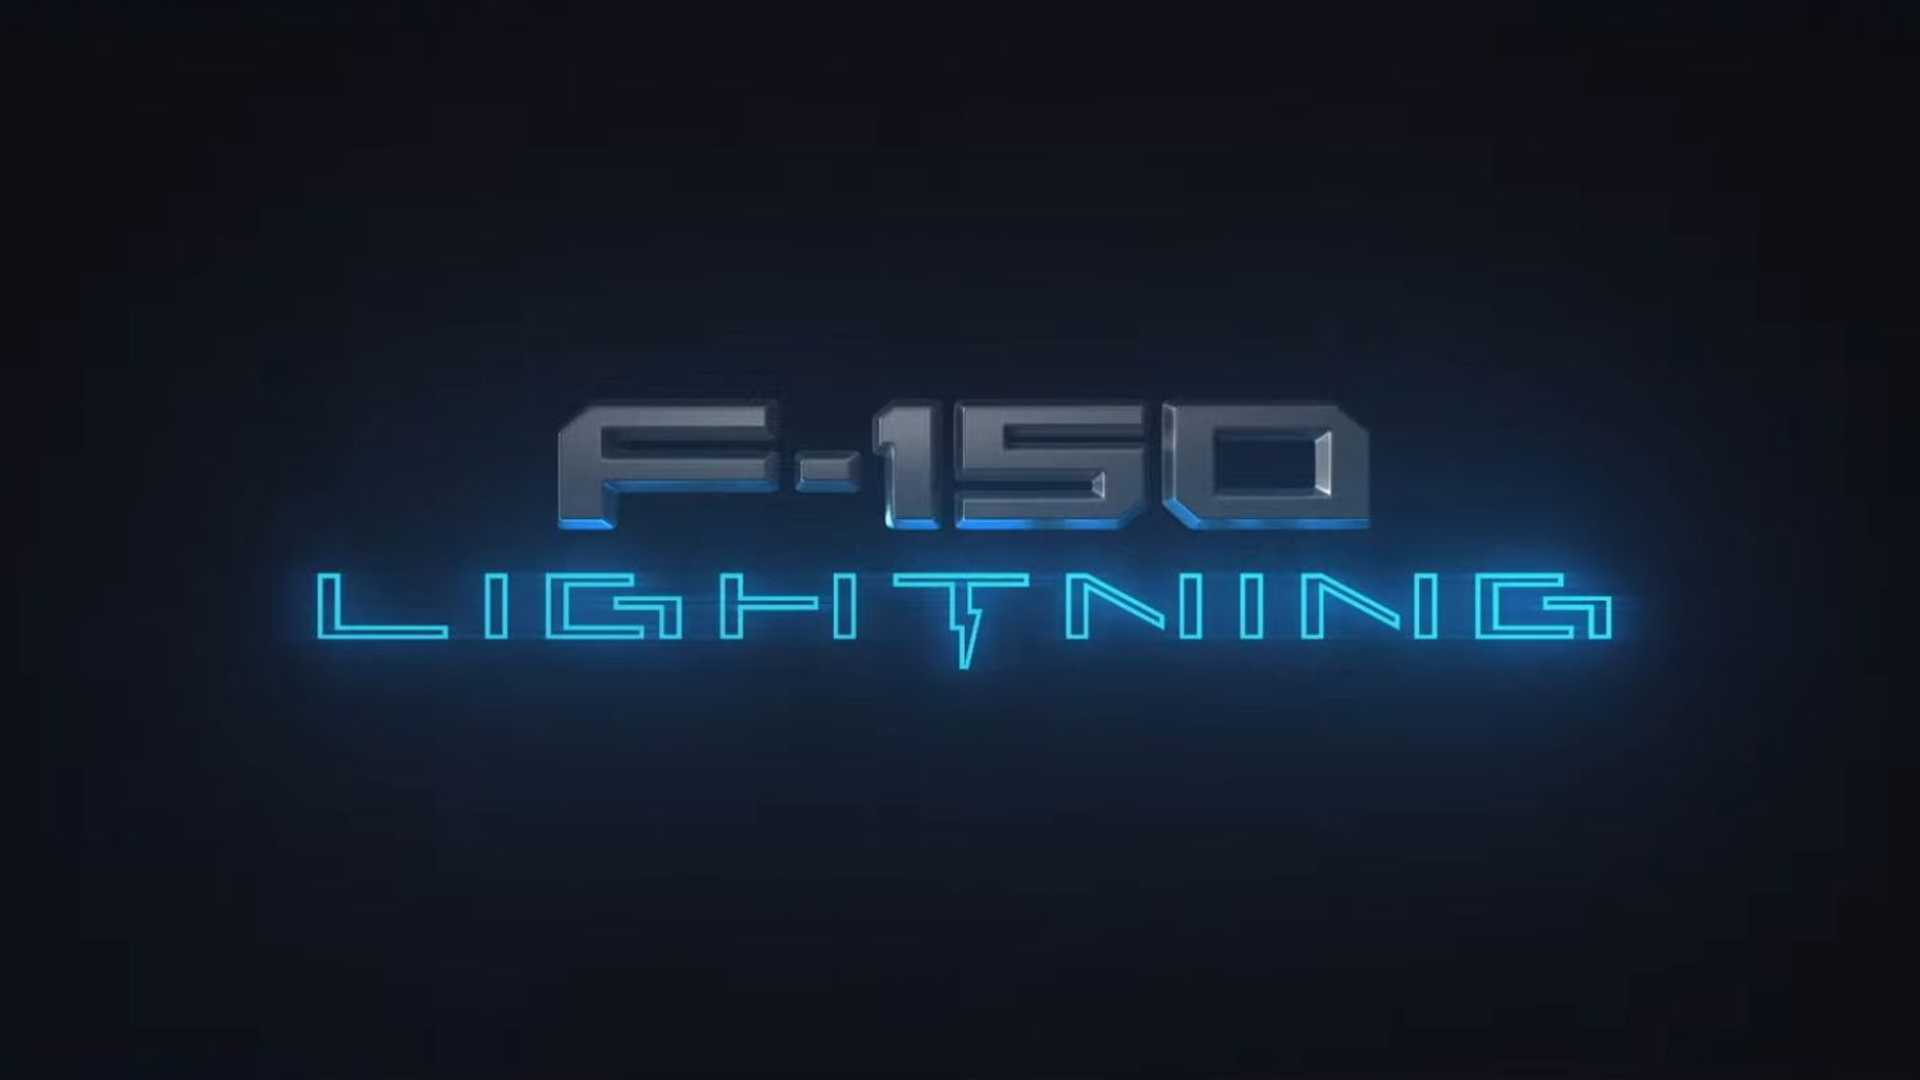 Ford officialise son pick-up électrique F-150, baptisé Lightning